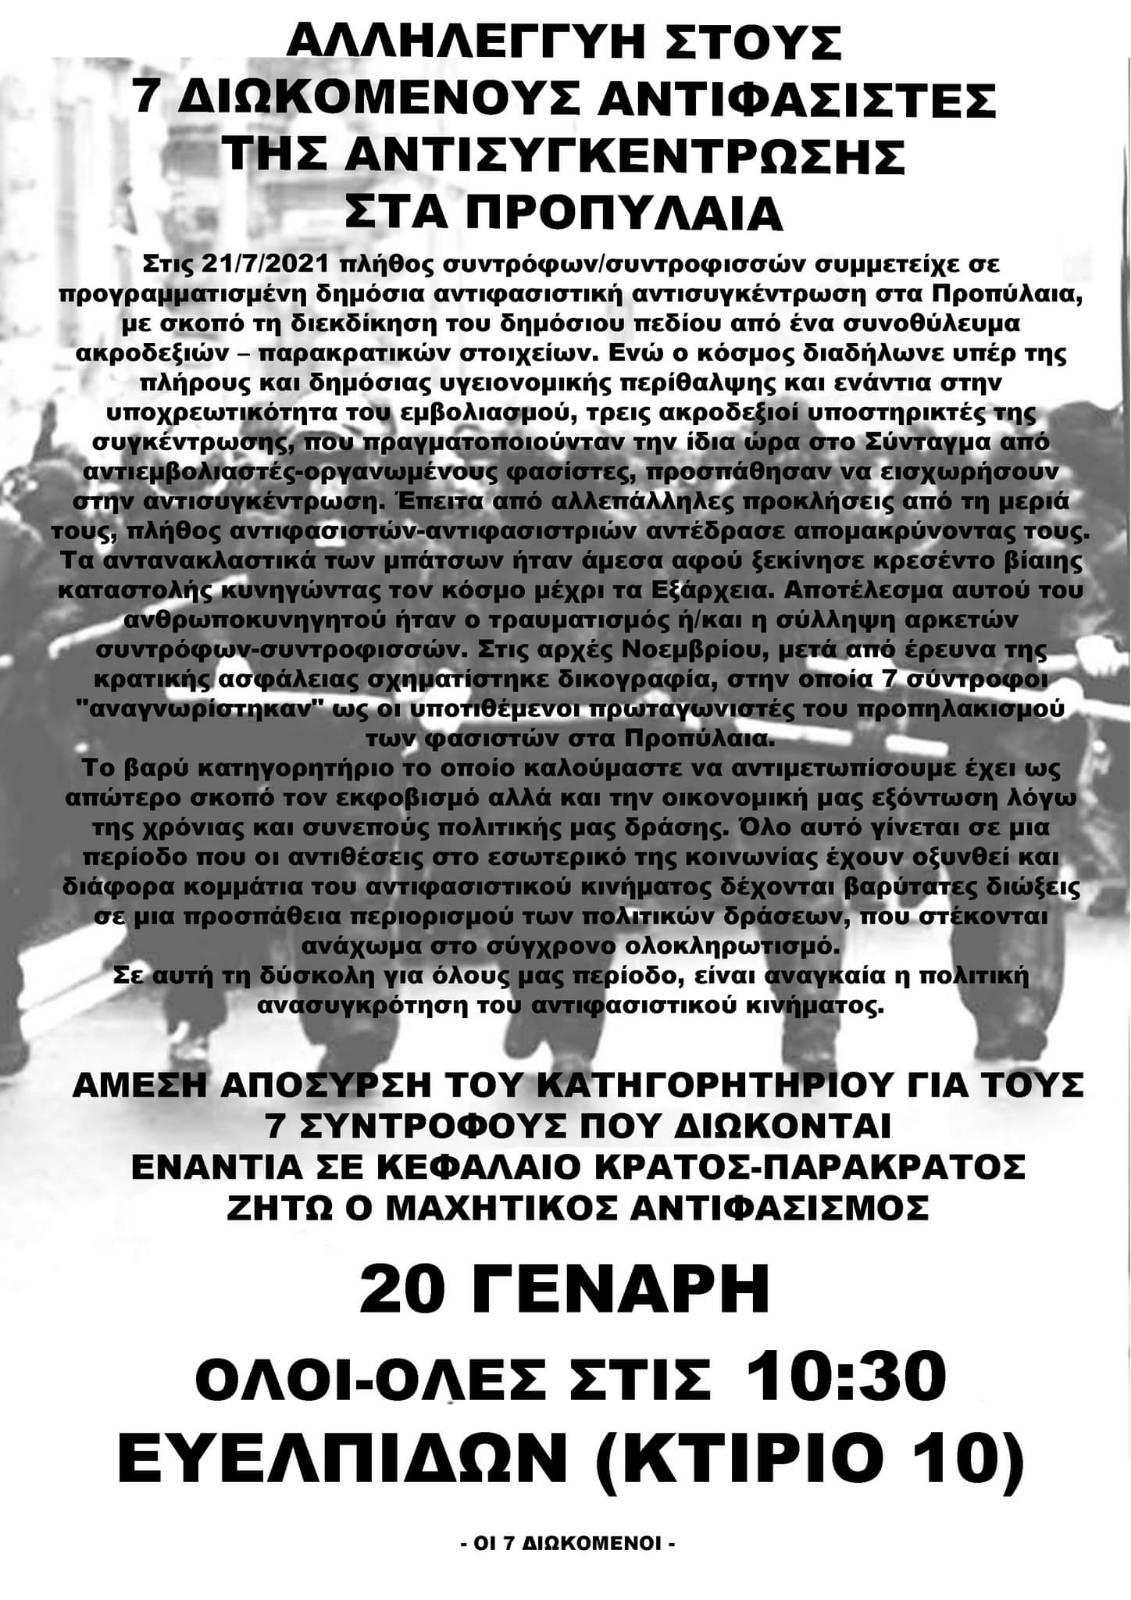 Αθήνα | Κάλεσμα στα δικαστήρια για τους 7 διωκόμενους αντιφασίστες για την αντισυγκέντρωση στις 21/7/21. Στις 20/01 καλούμε [...]